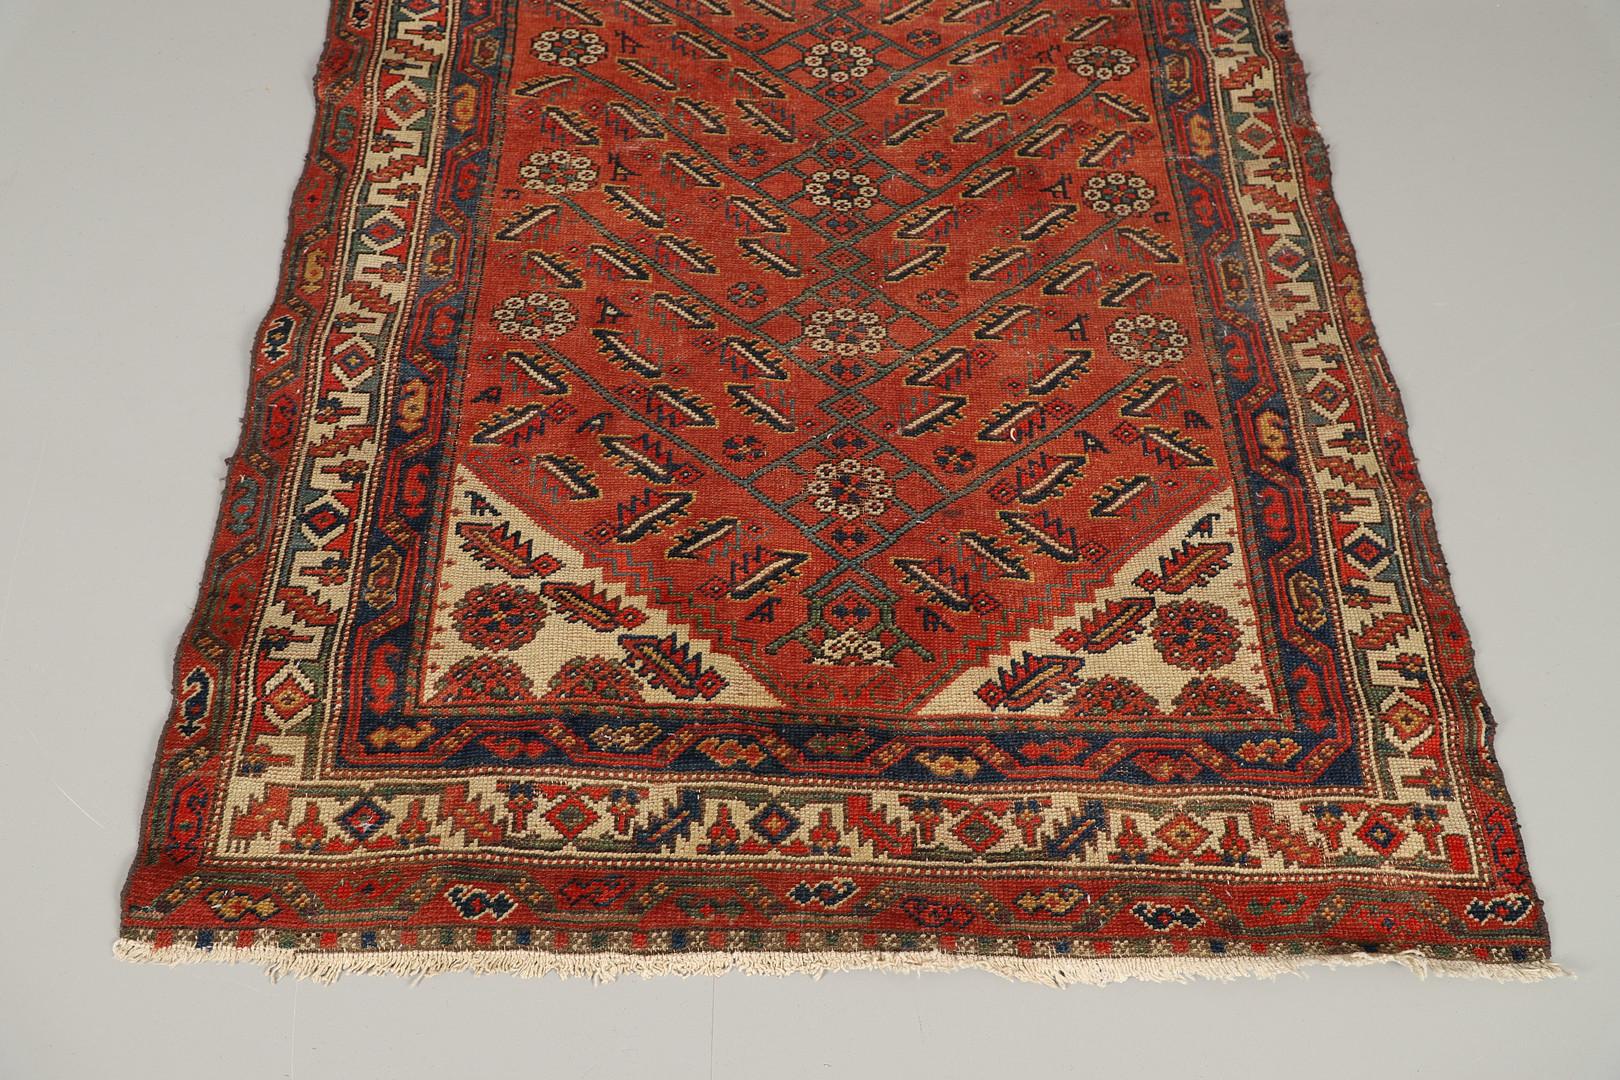 Kazak Rare Antique Rug Caucasian Oriental Rug Handmade Carpet Rustic Kurdish Area Rug For Sale